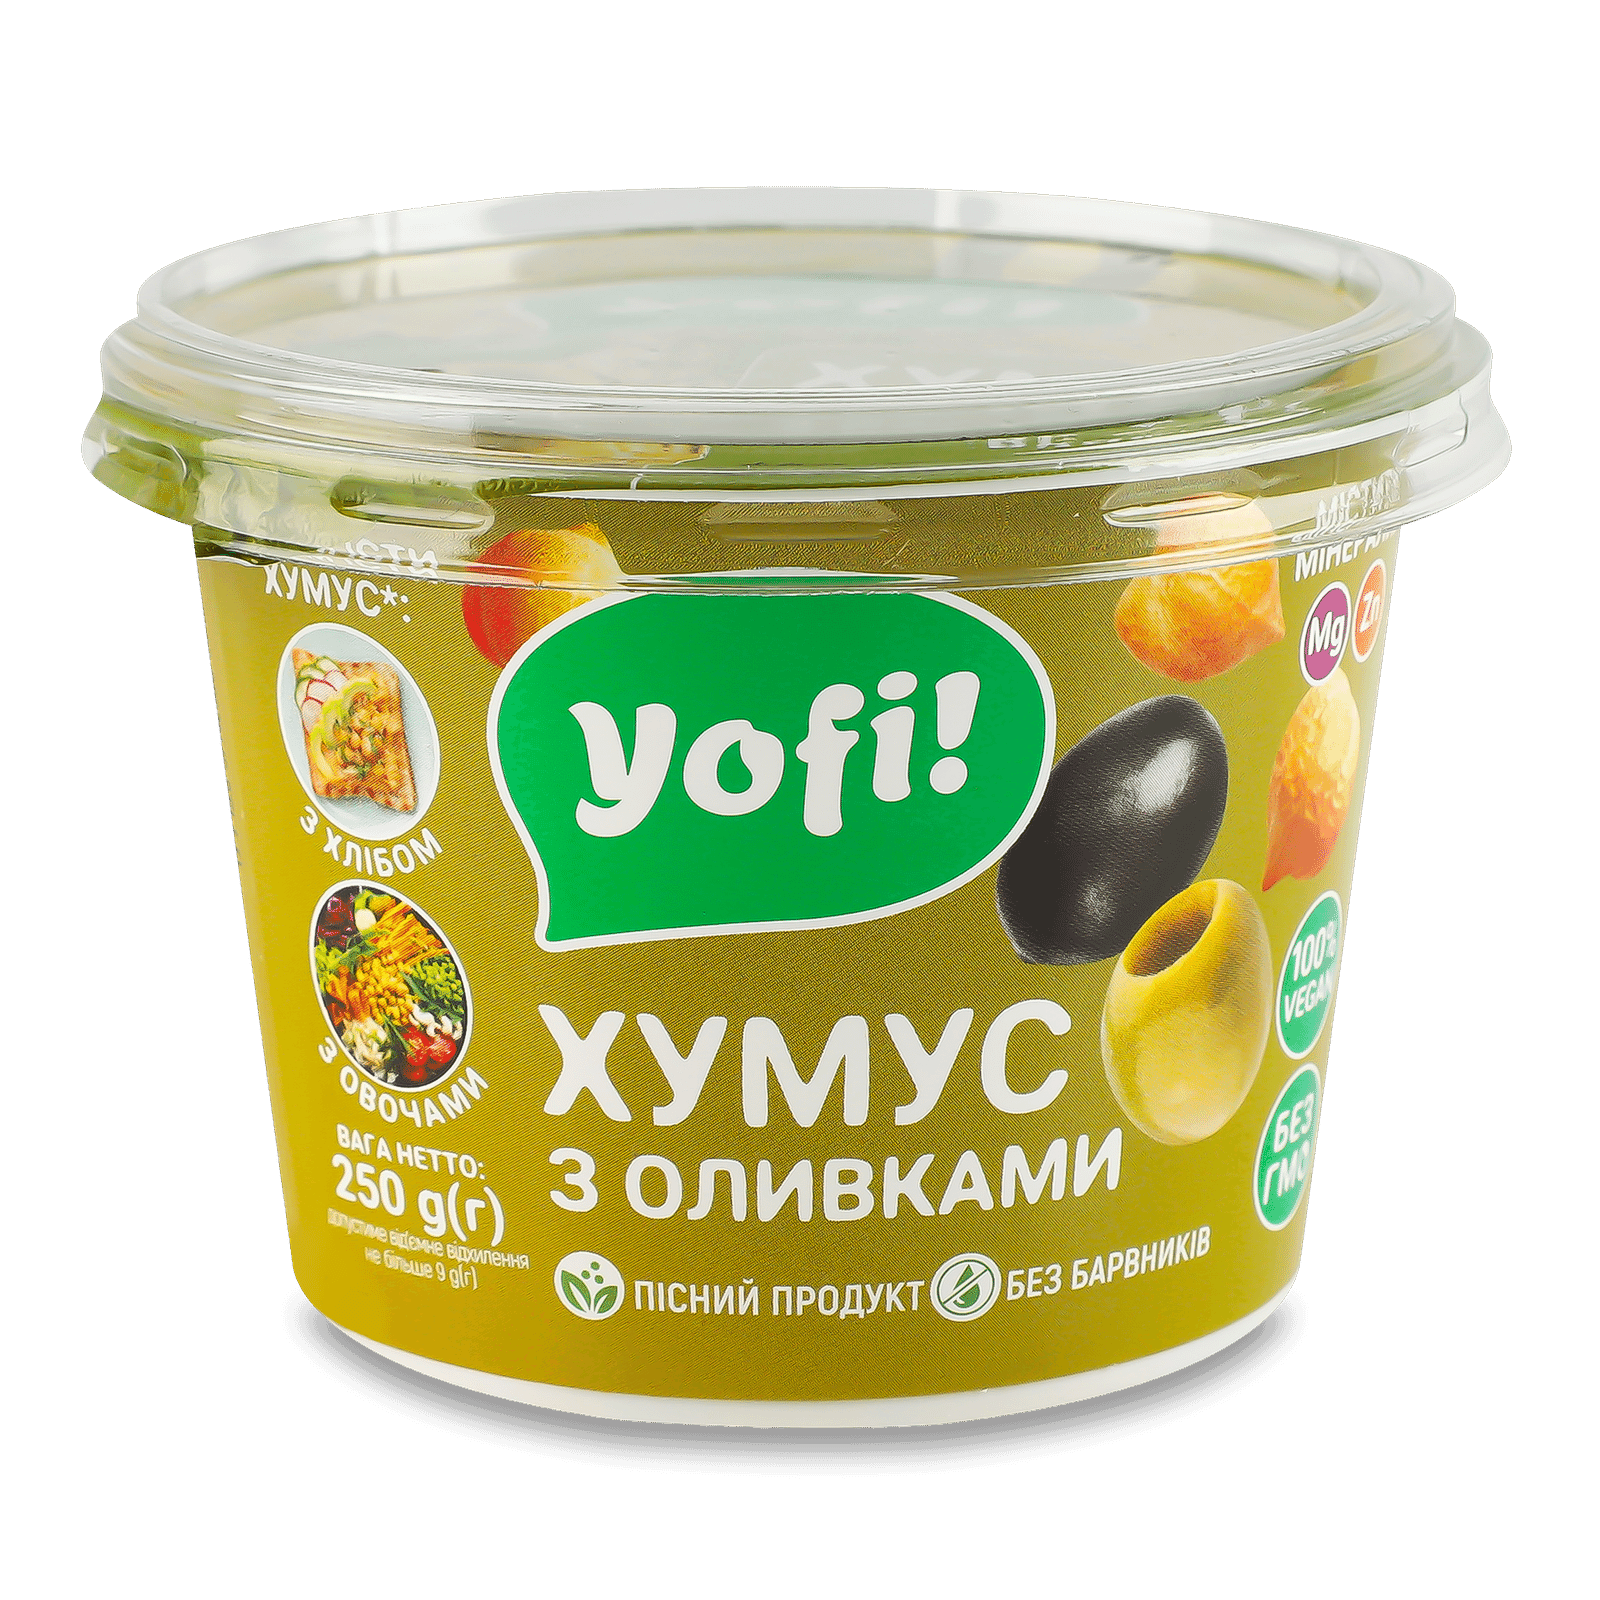 Закуска YoFi! Hummus з оливками з нуту - 1